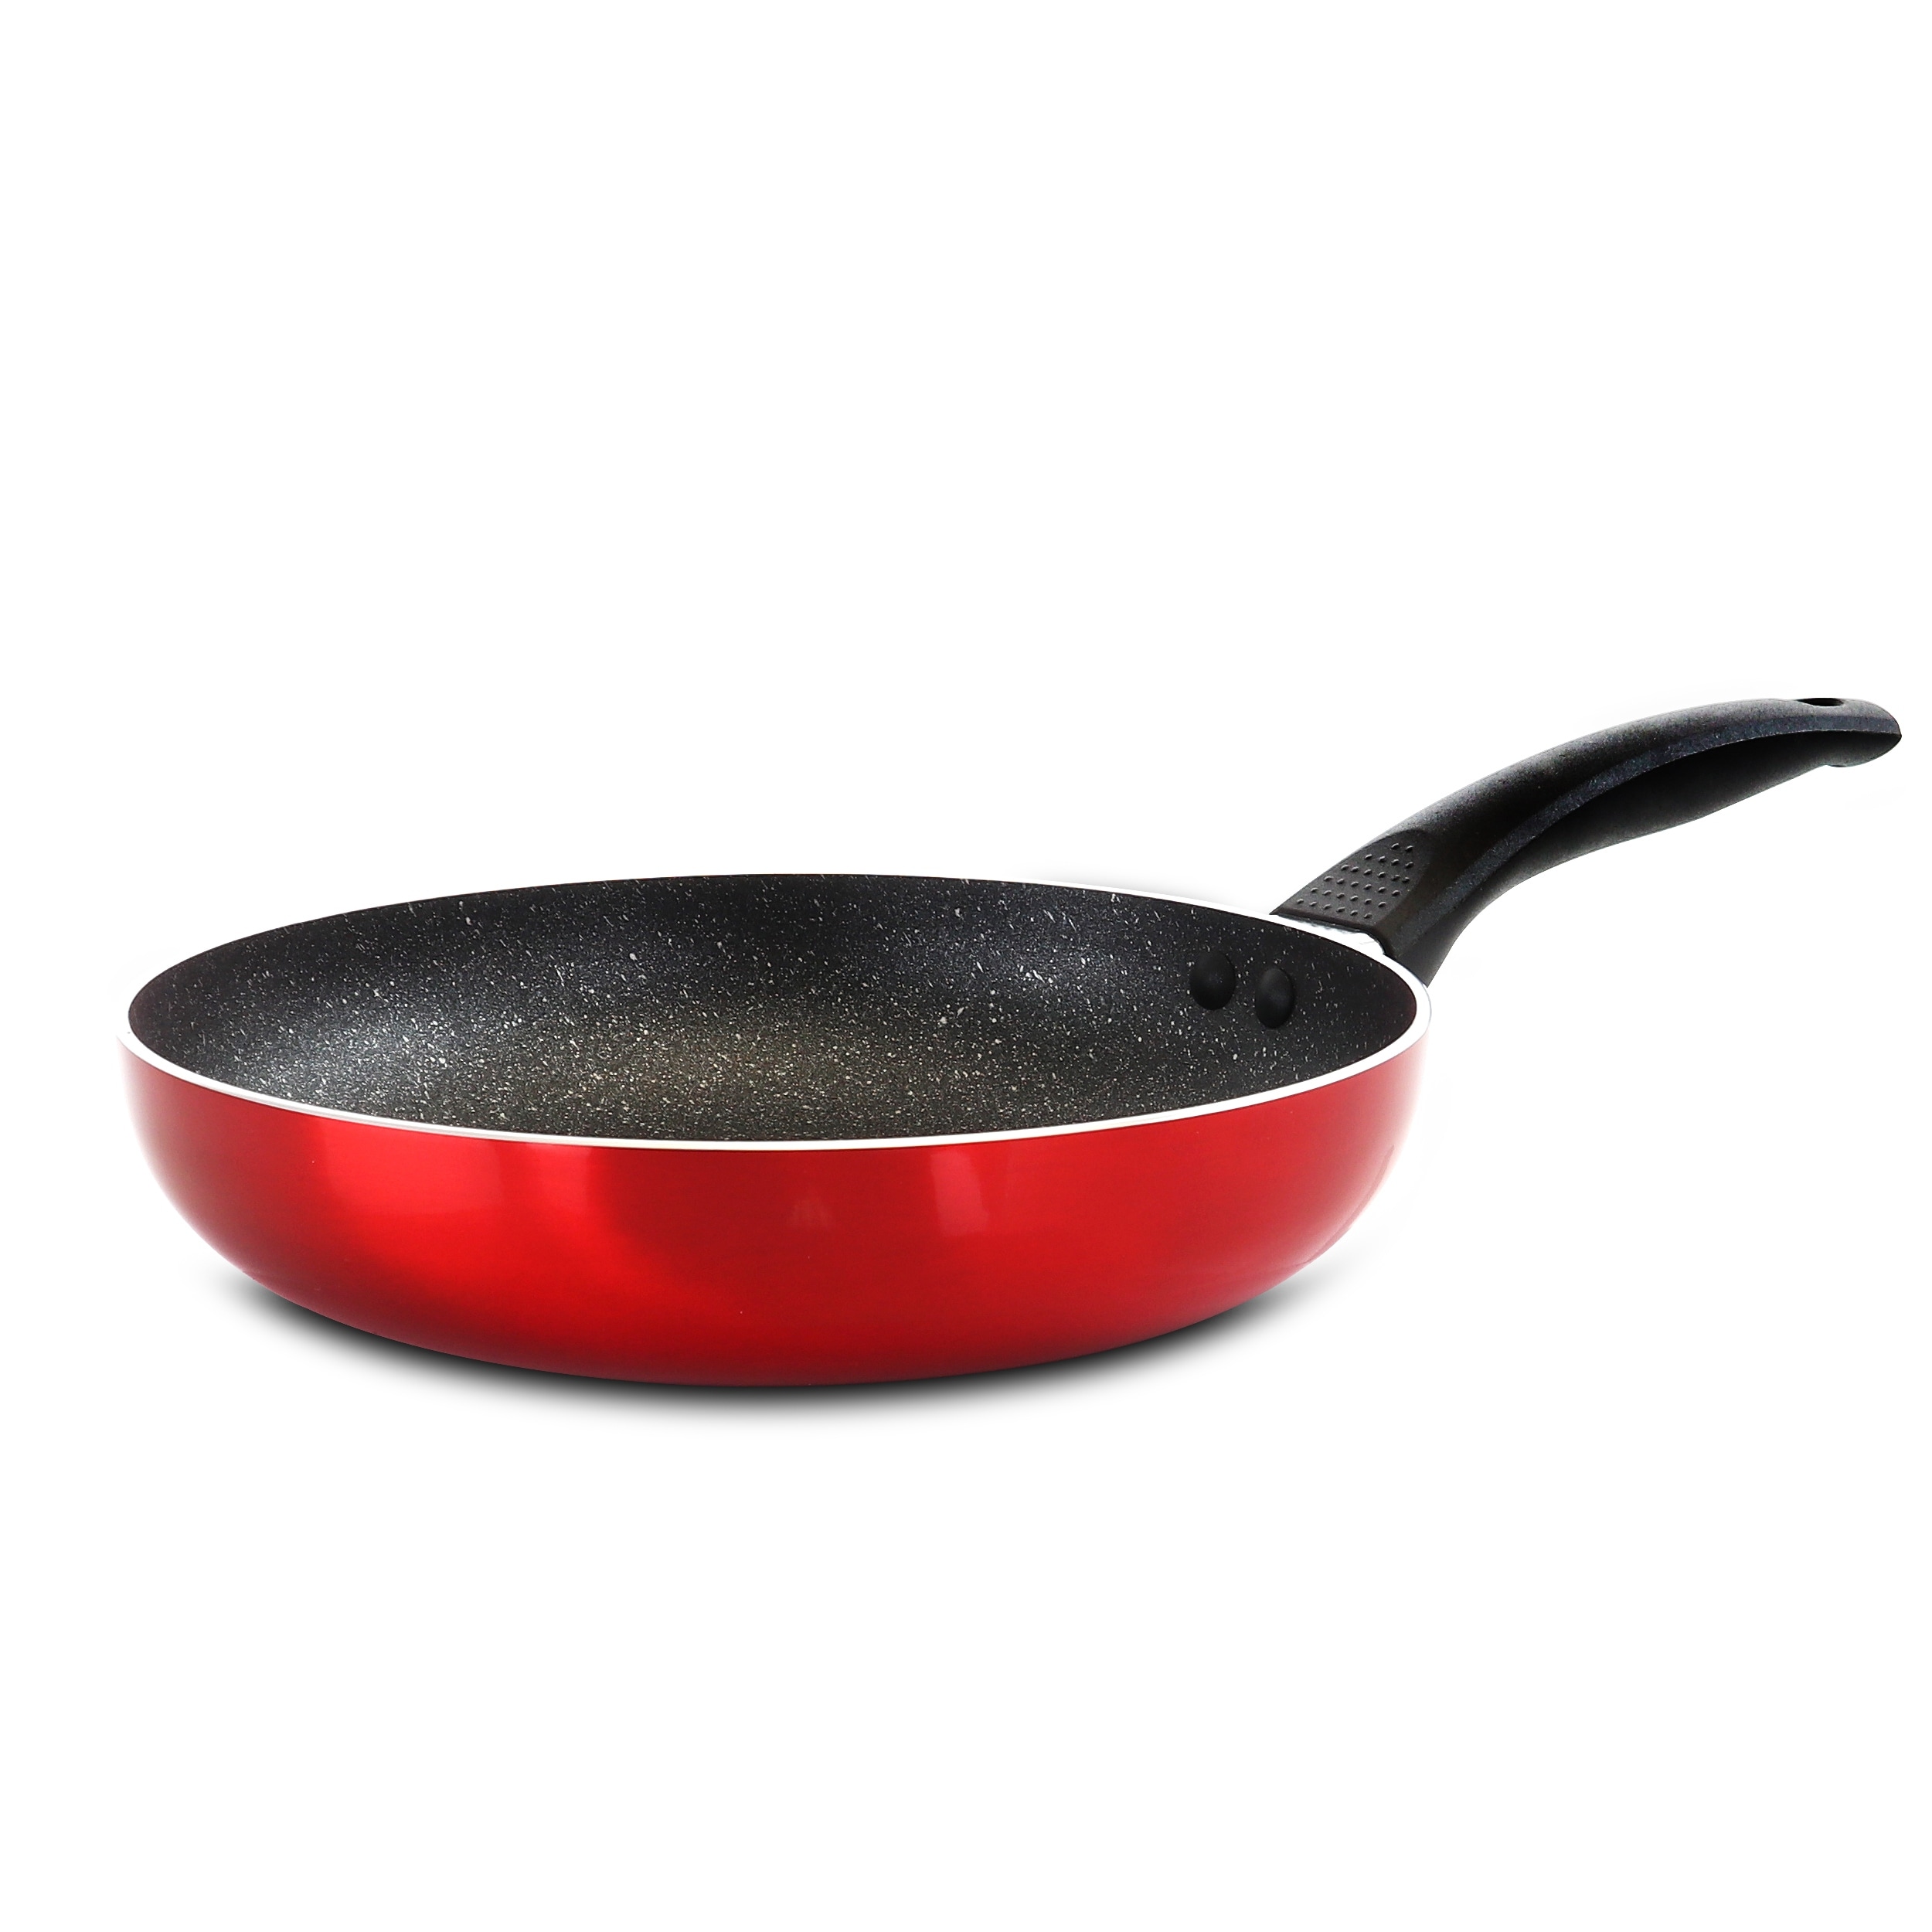 5 inch frying pan